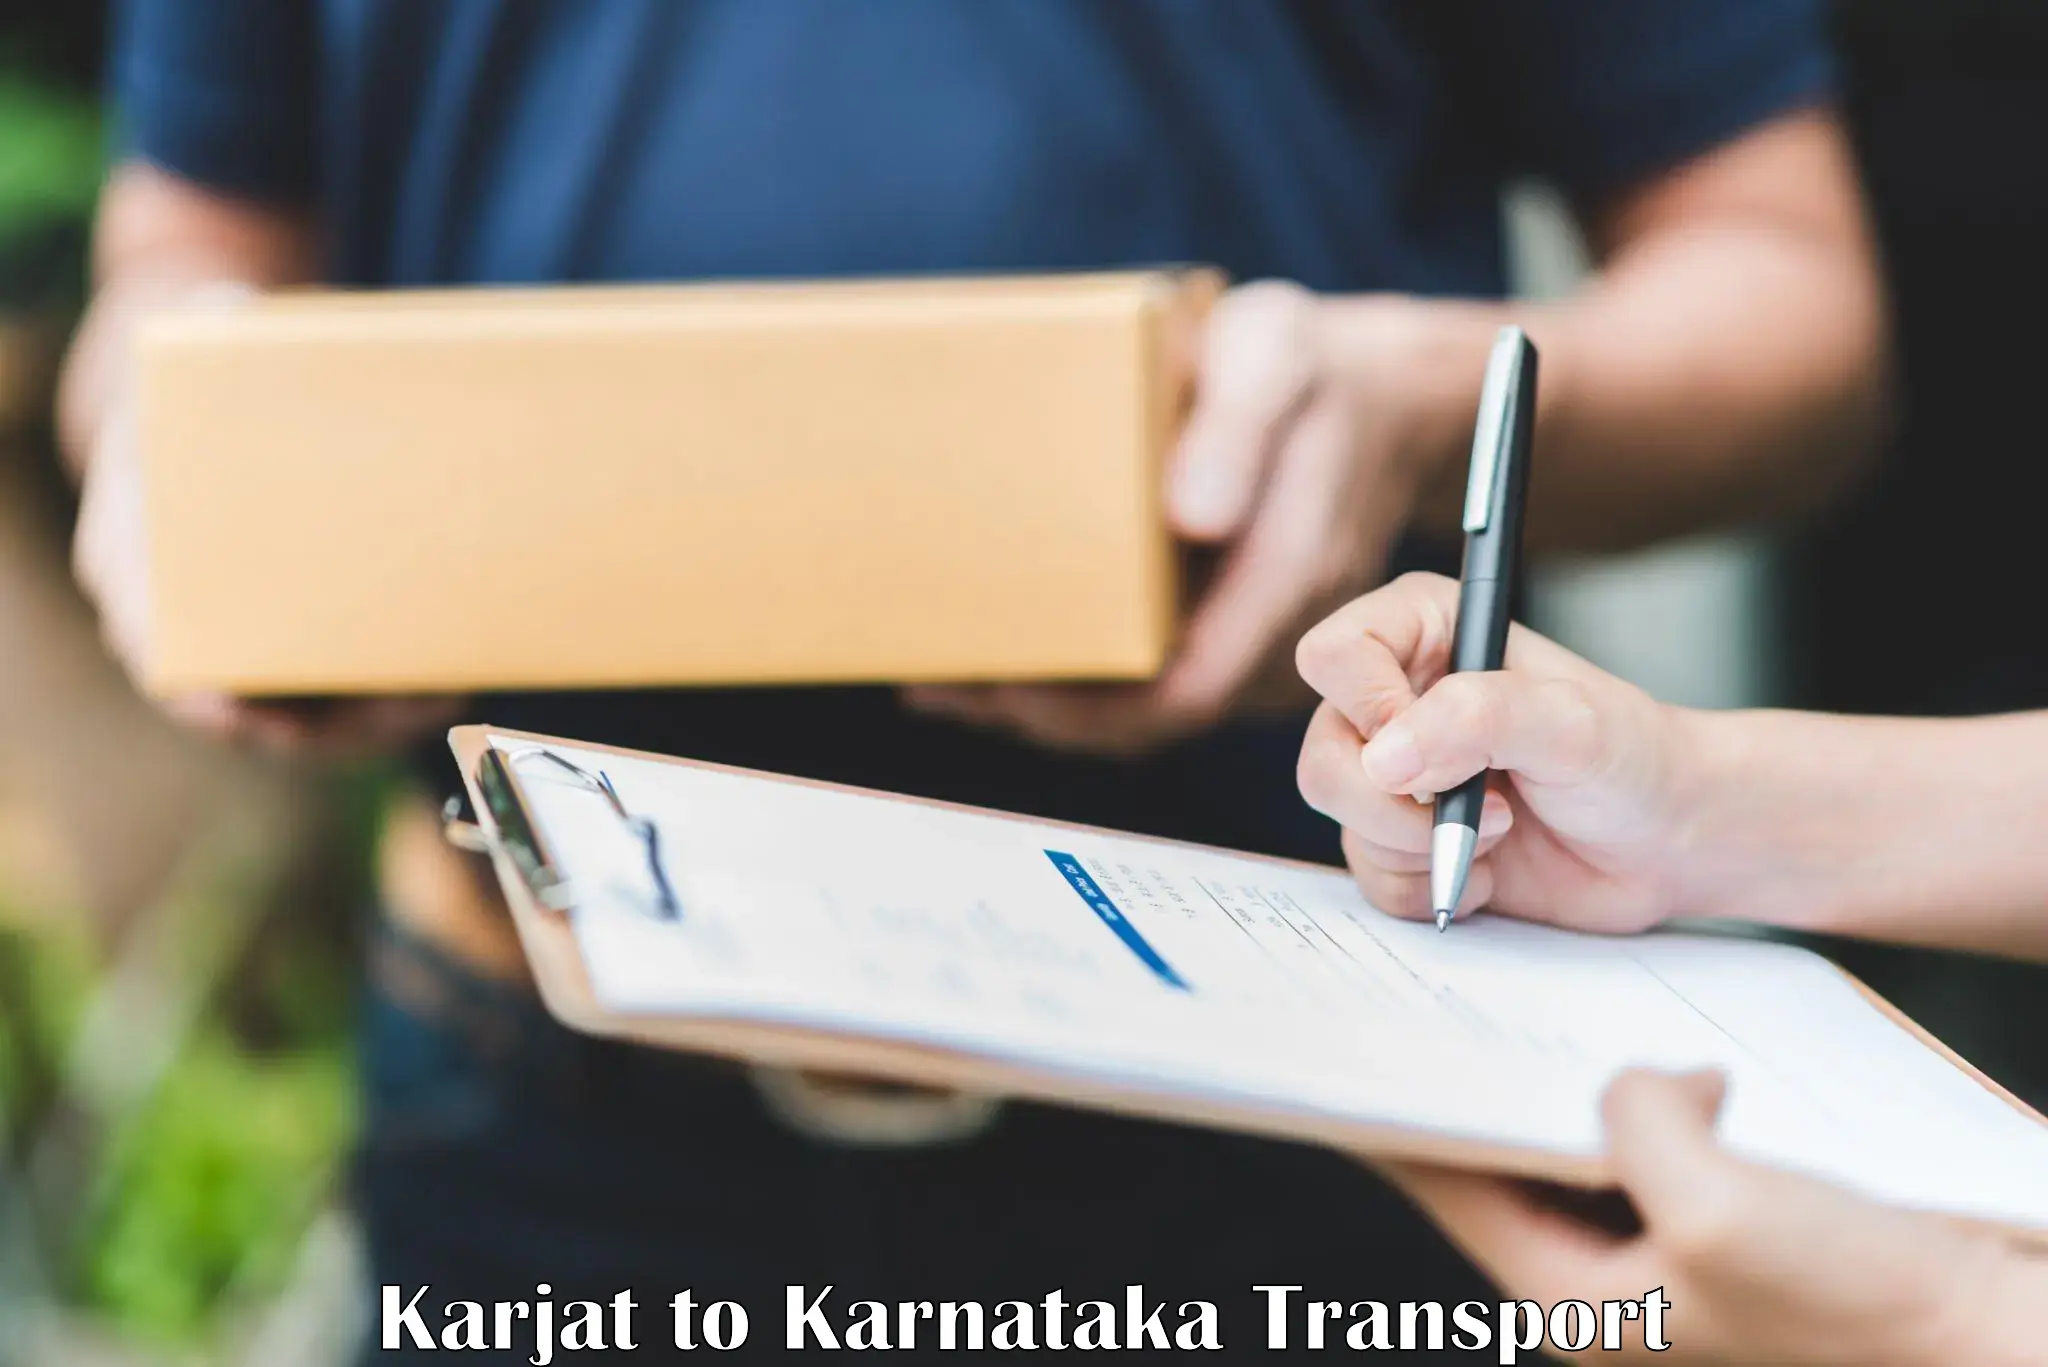 Shipping partner Karjat to Bangalore